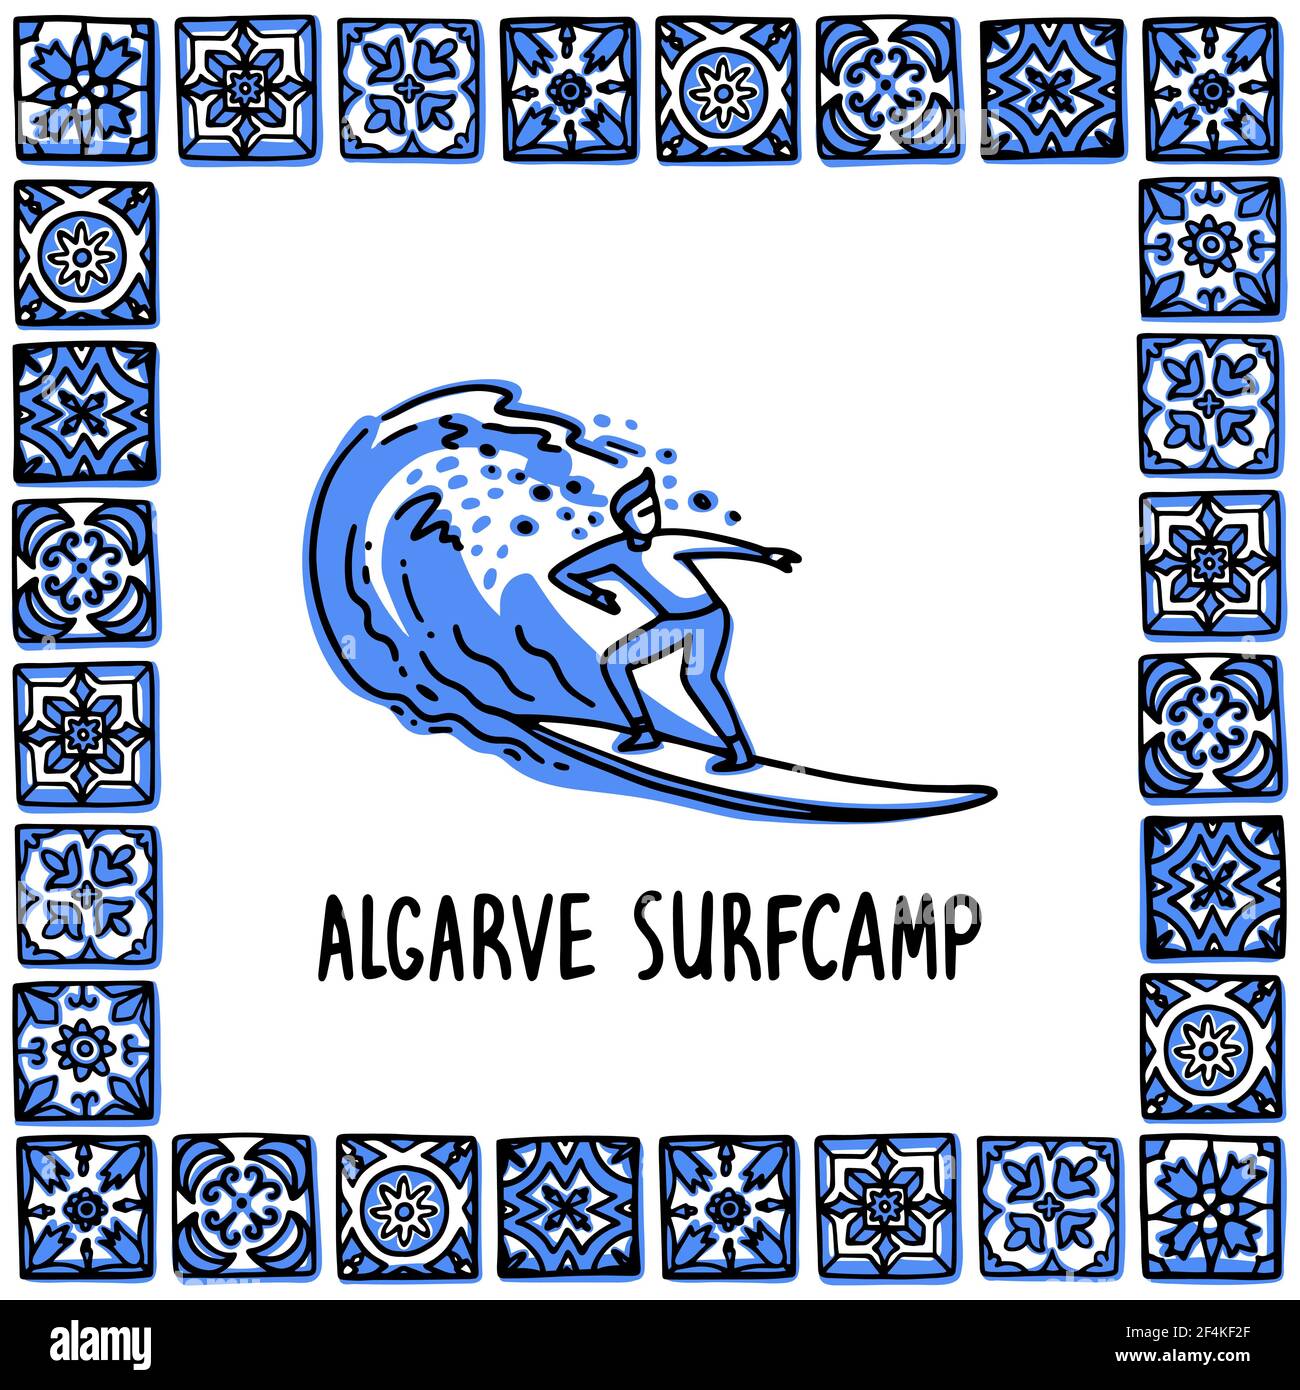 Portogallo luoghi di interesse set. Campo da surf Algarve. Un surfista corre su un'onda nella cornice di piastrelle portoghesi, azulejo. Illustrazione vettoriale dello stile di schizzo disegnato a mano. Illustrazione Vettoriale